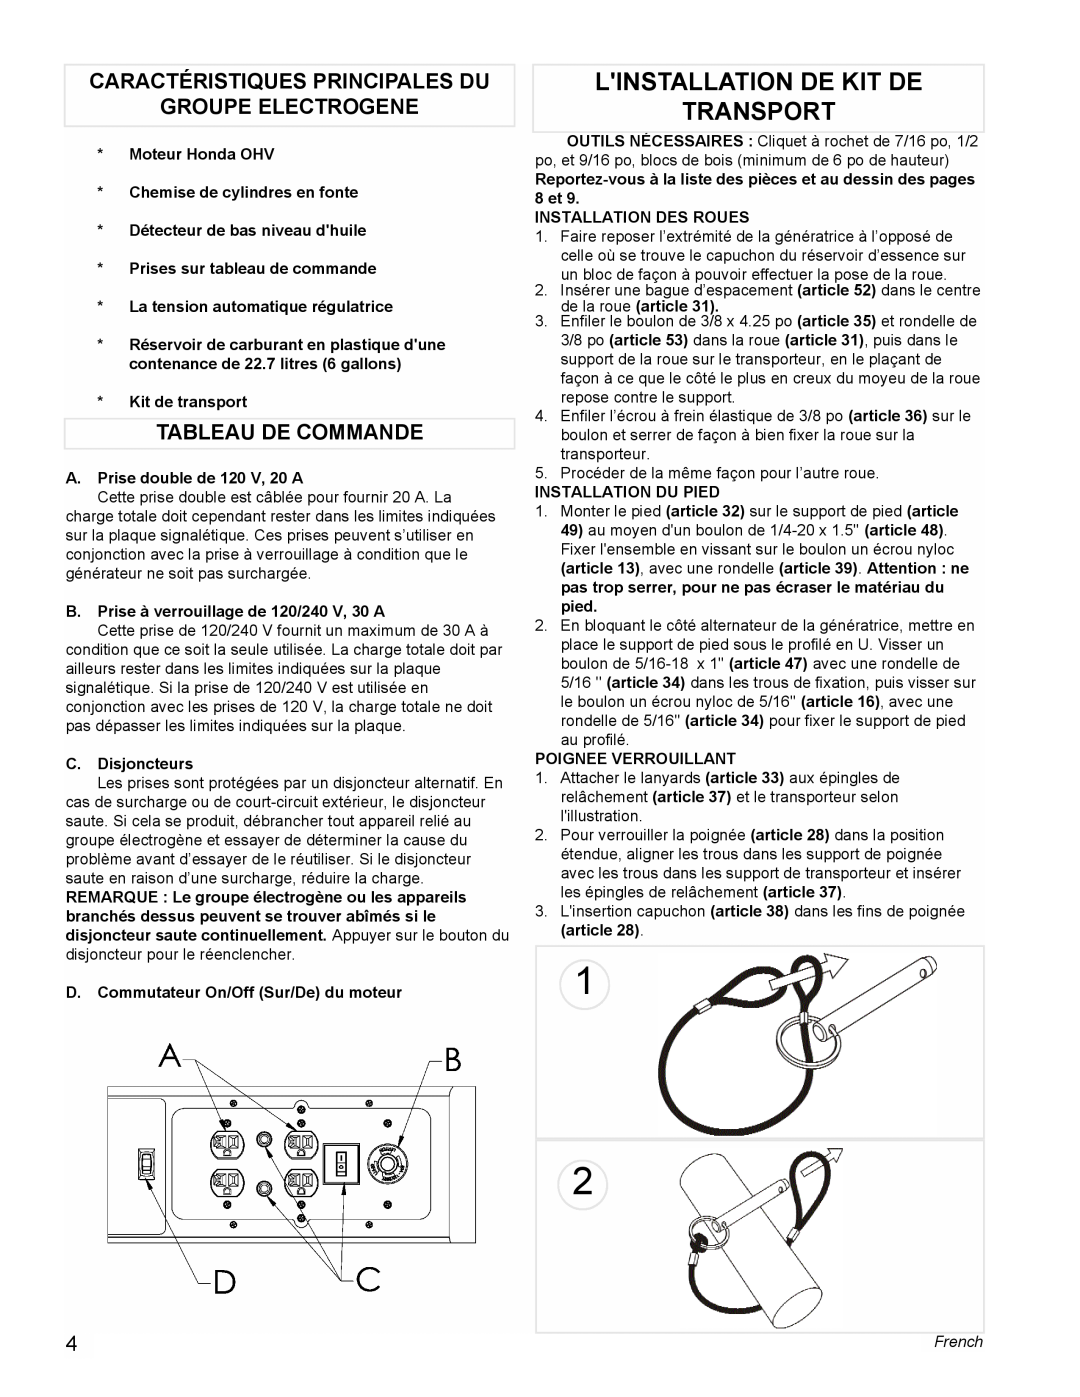 Powermate PC0495503 manual Linstallation De Kit De Transport, Caractéristiques Principales Du, Groupe Electrogene, French 